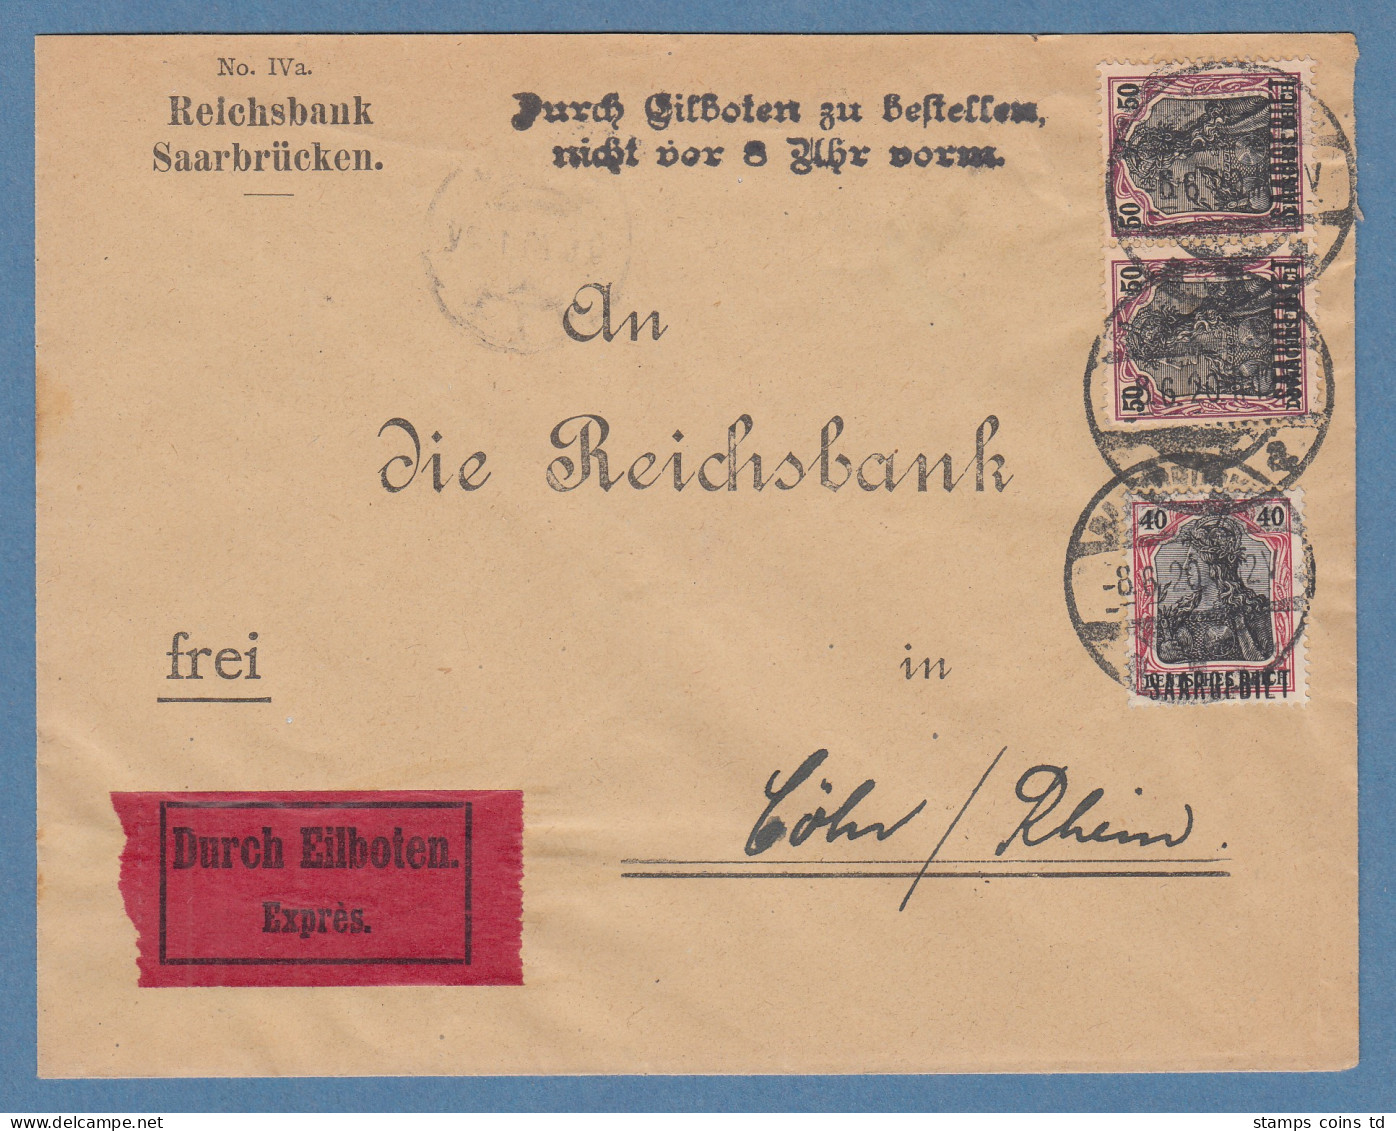 Saargebiet Mi.-Nr. 38 Waag. Paar Und 37 Auf Wert-Brief Aus Saarbrücken N. Köln - Storia Postale